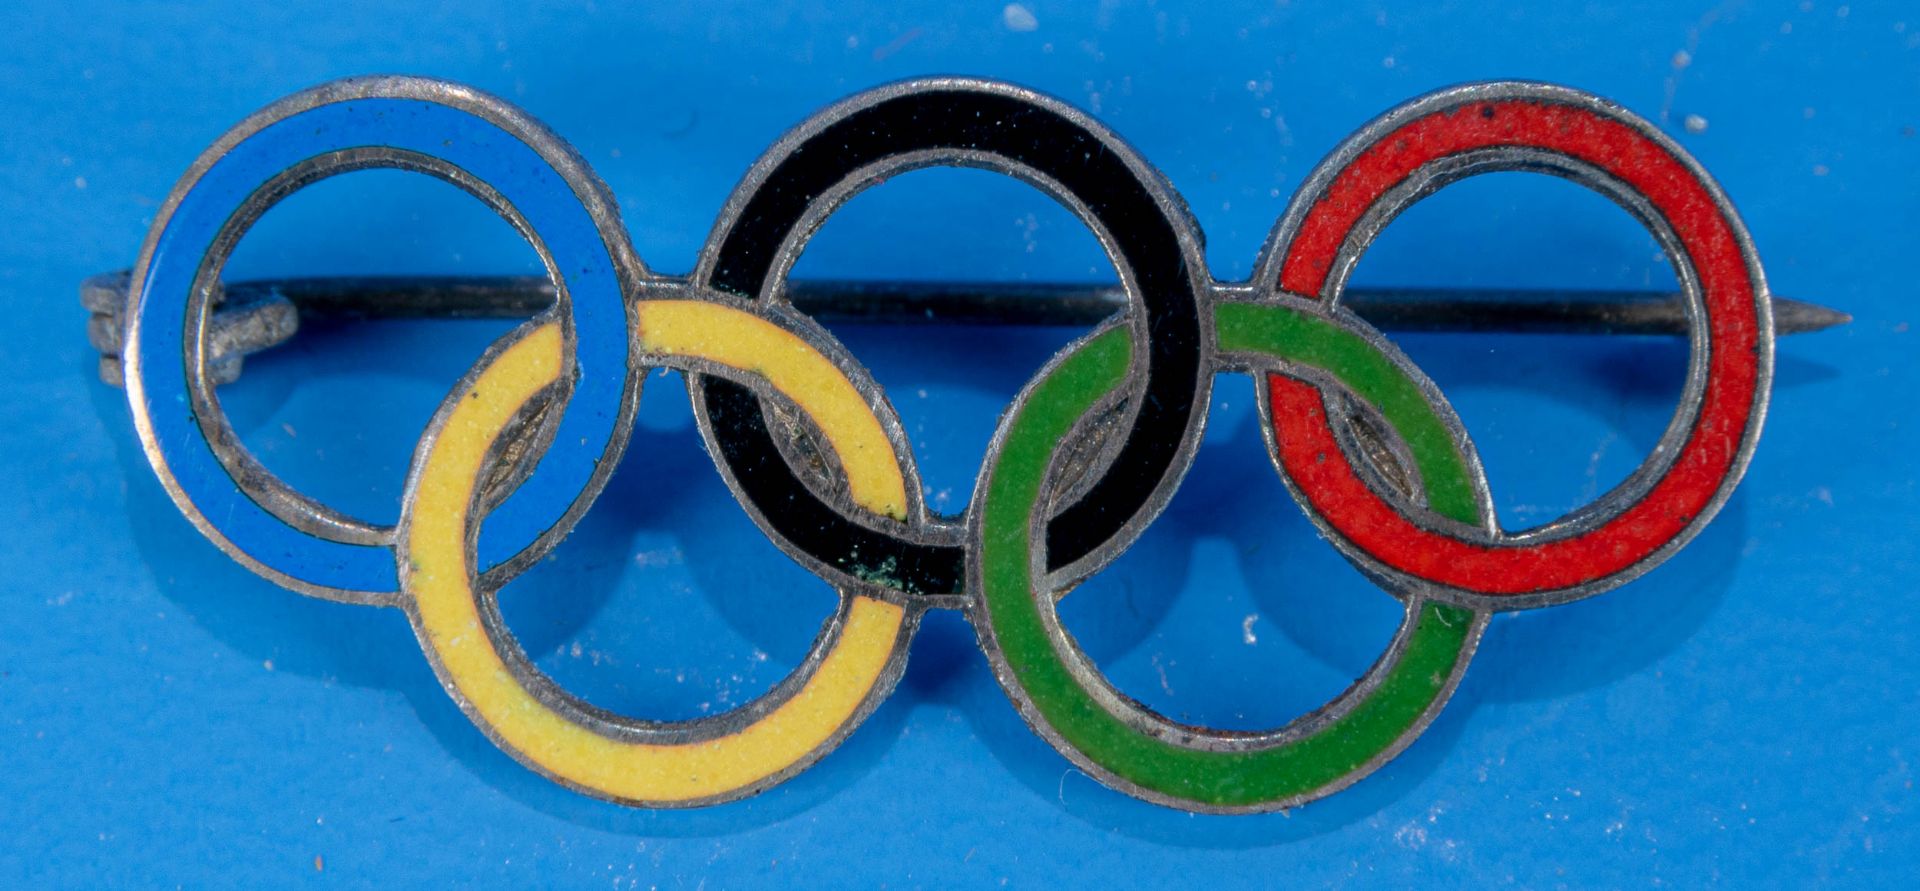 Emaillierte Brosche,die Olympiade 1936 betreffend; schöner, getragener Erhalt.